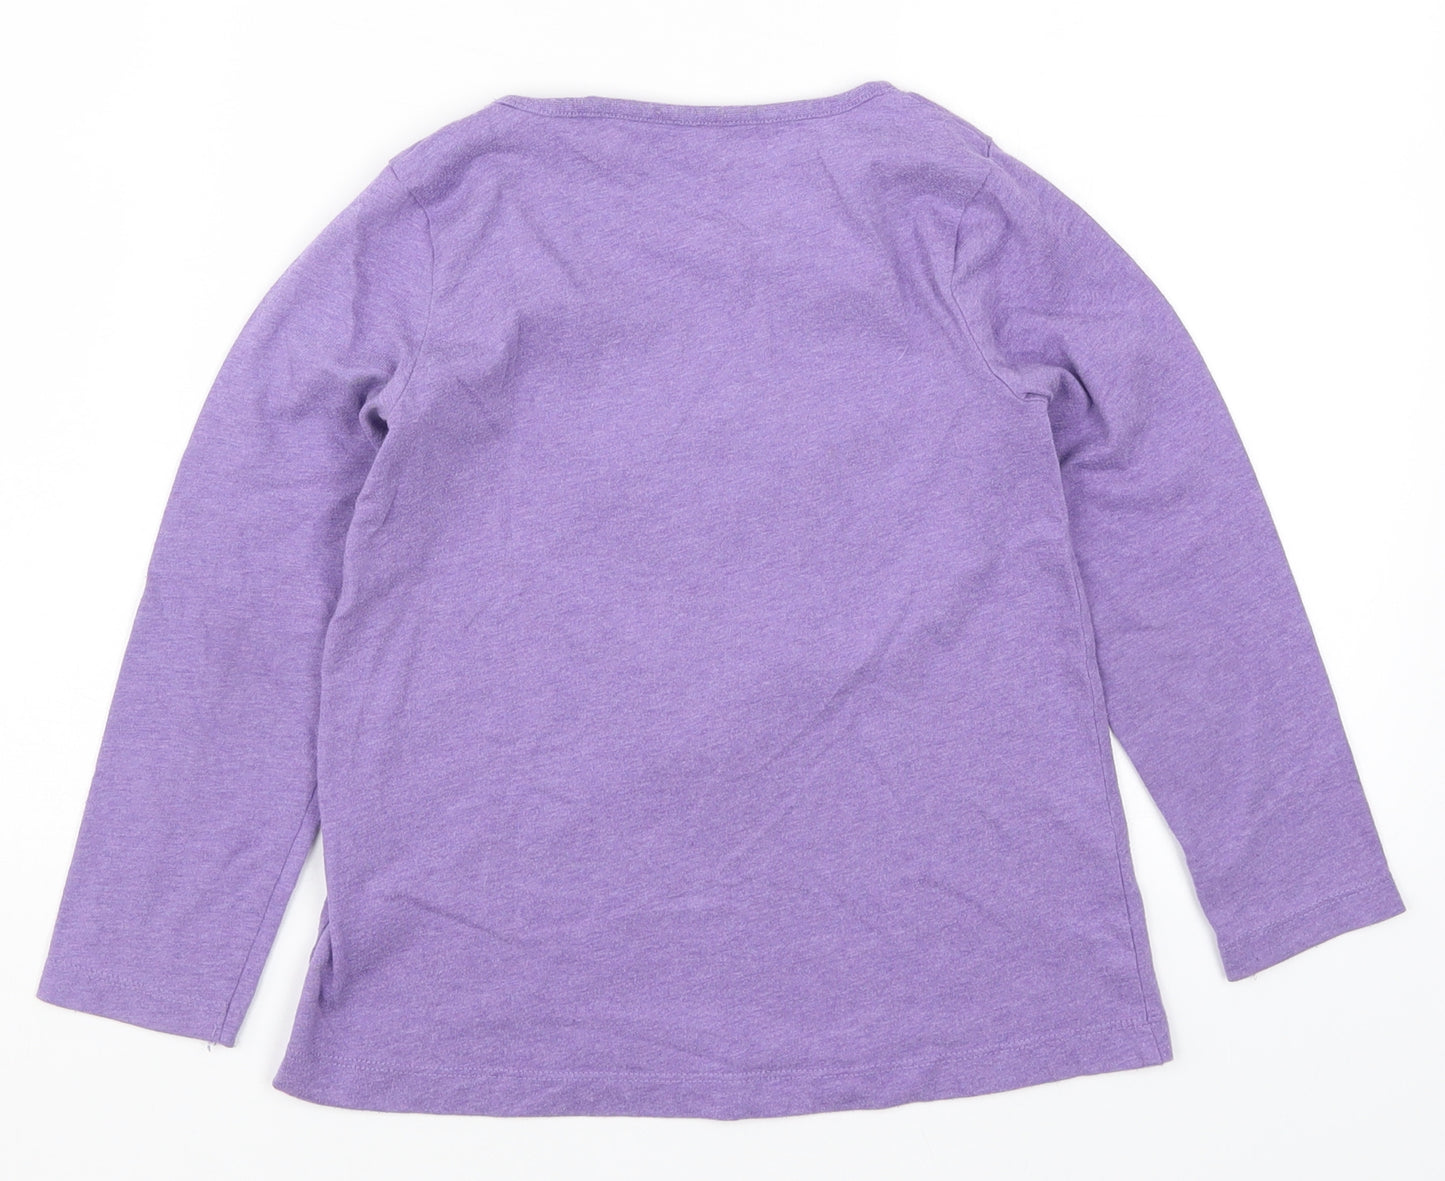 Topolino Girls Purple   Basic T-Shirt Size 7 Years  - Alpaca